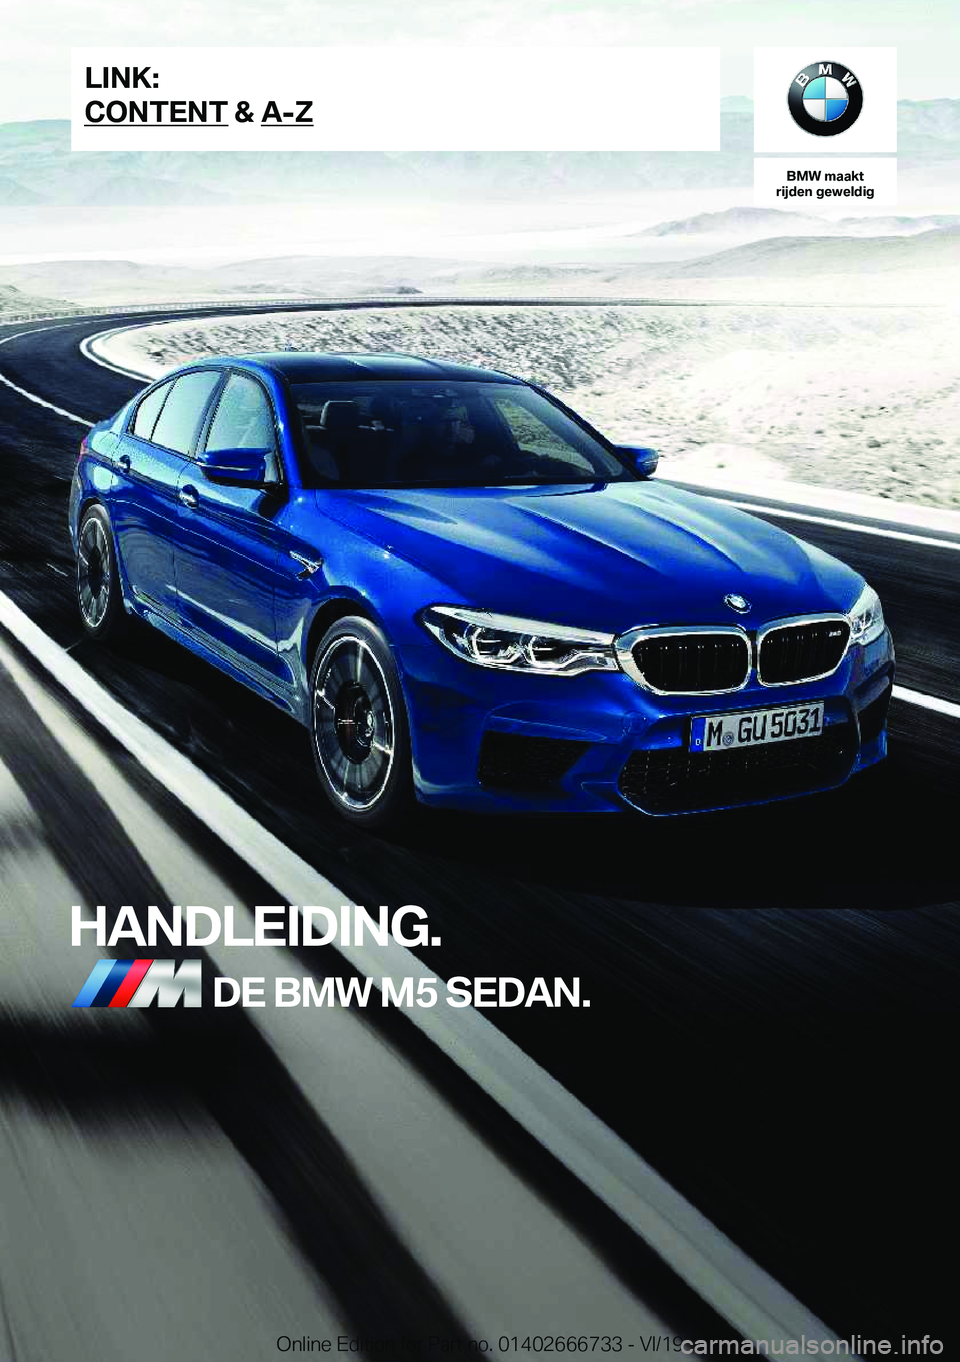 BMW M5 2020  Instructieboekjes (in Dutch) �B�M�W��m�a�a�k�t
�r�i�j�d�e�n��g�e�w�e�l�d�i�g
�H�A�N�D�L�E�I�D�I�N�G�.�D�E��B�M�W��M�5��S�E�D�A�N�.�L�I�N�K�:
�C�O�N�T�E�N�T��&��A�-�Z�O�n�l�i�n�e��E�d�i�t�i�o�n��f�o�r��P�a�r�t��n�o�.��